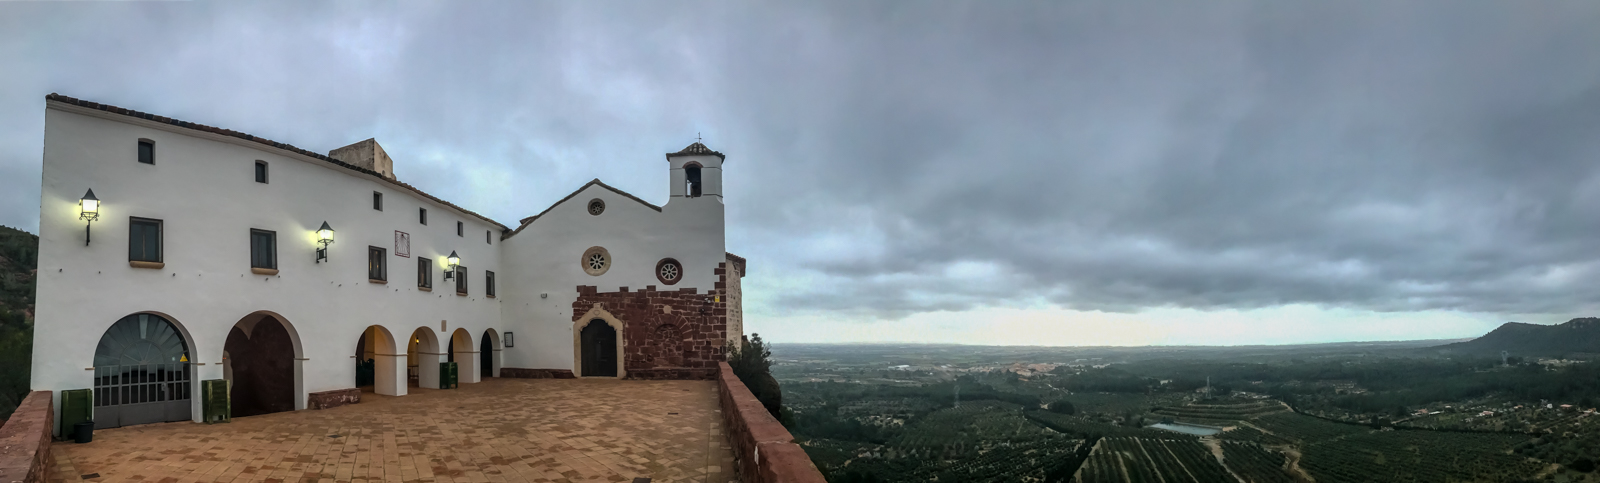 Panoràmica de l'Ermita de la Mare de Déu de la Roca (Mont-roig del Camp - Tarragona)